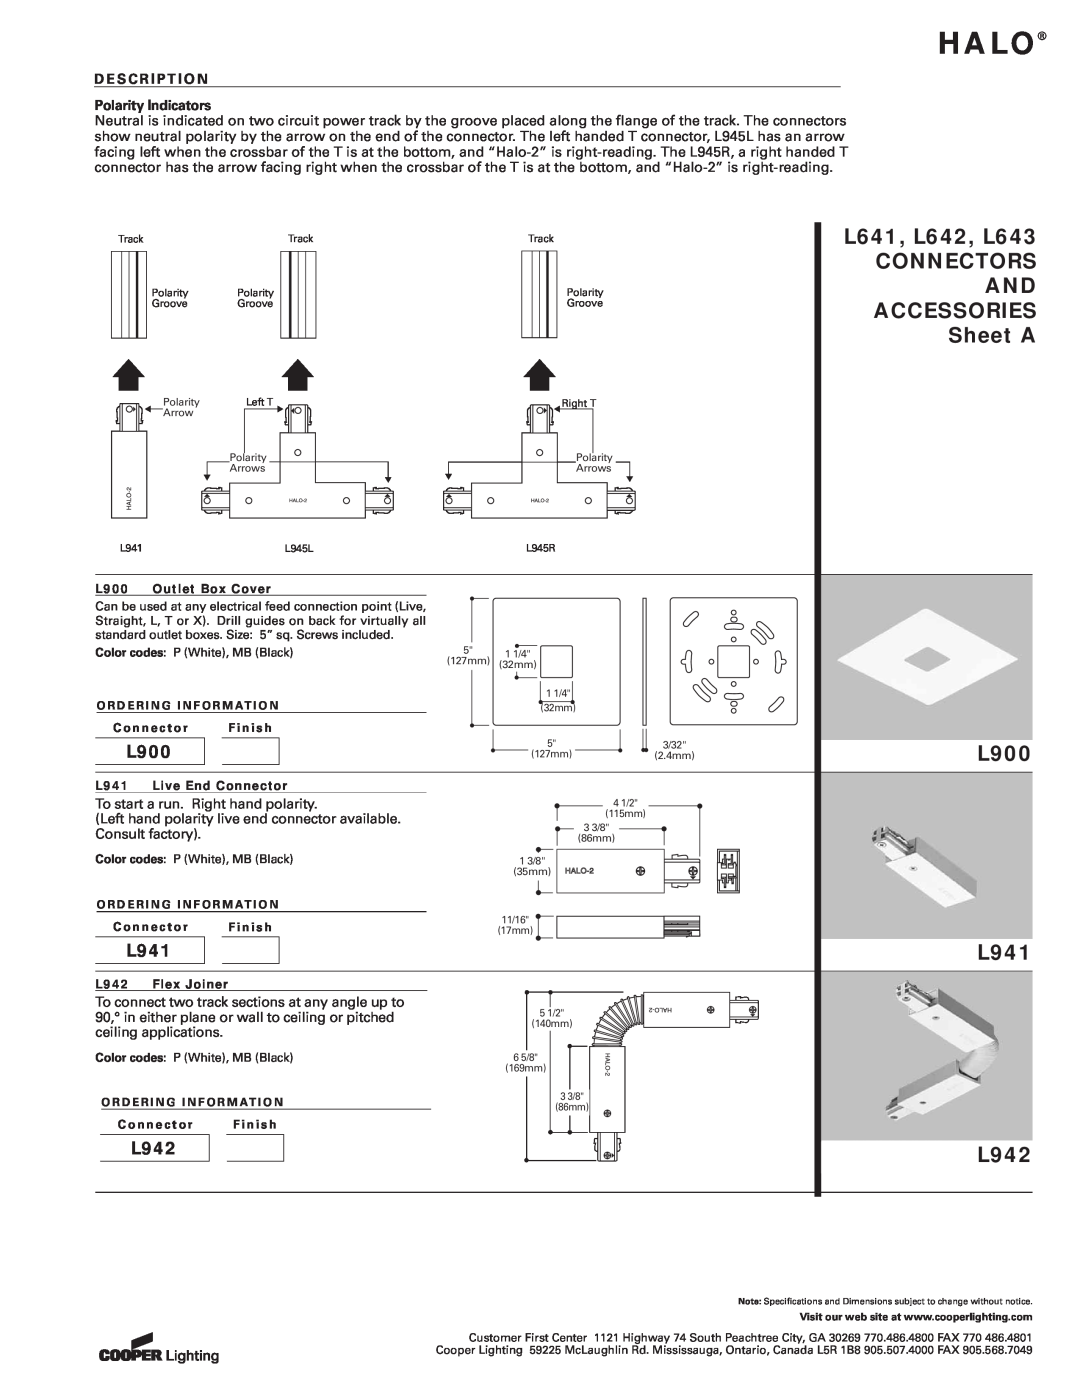 Cooper Lighting specifications L641, L642, L643, Connectors, Accessories, Sheet A, L900, L941, L942, Halo 